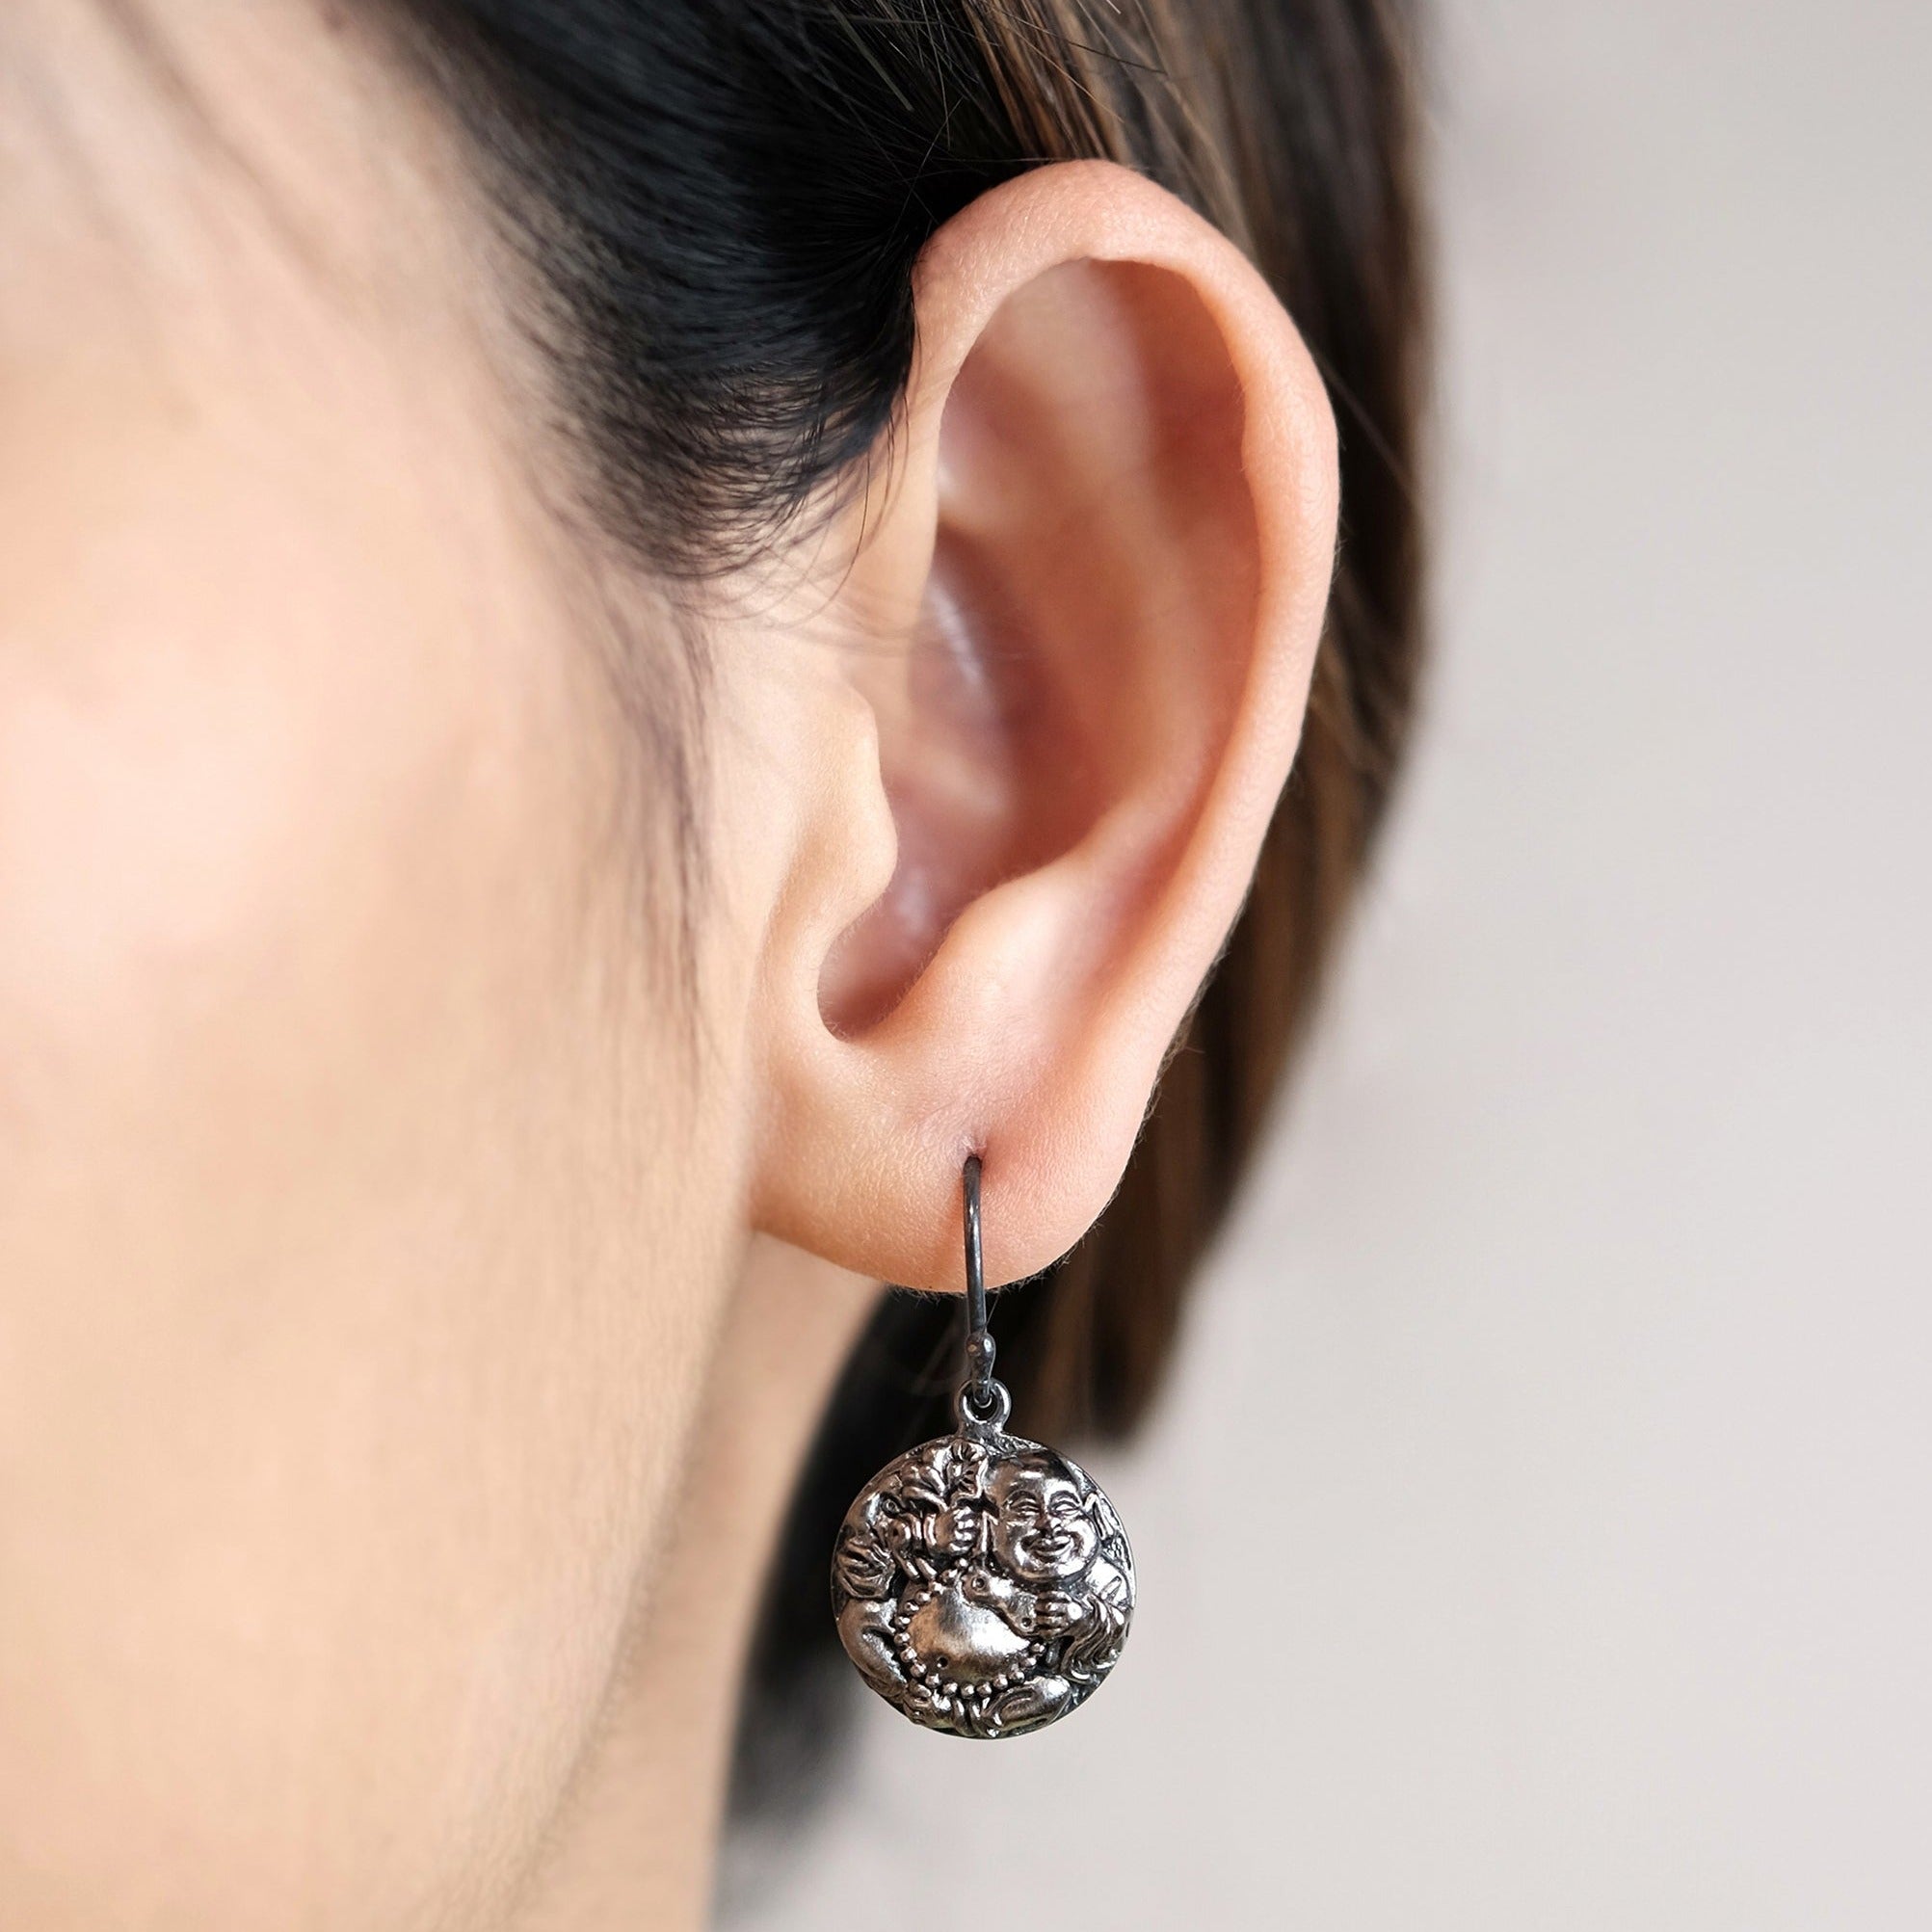 The Madstone Happy buddha earrings